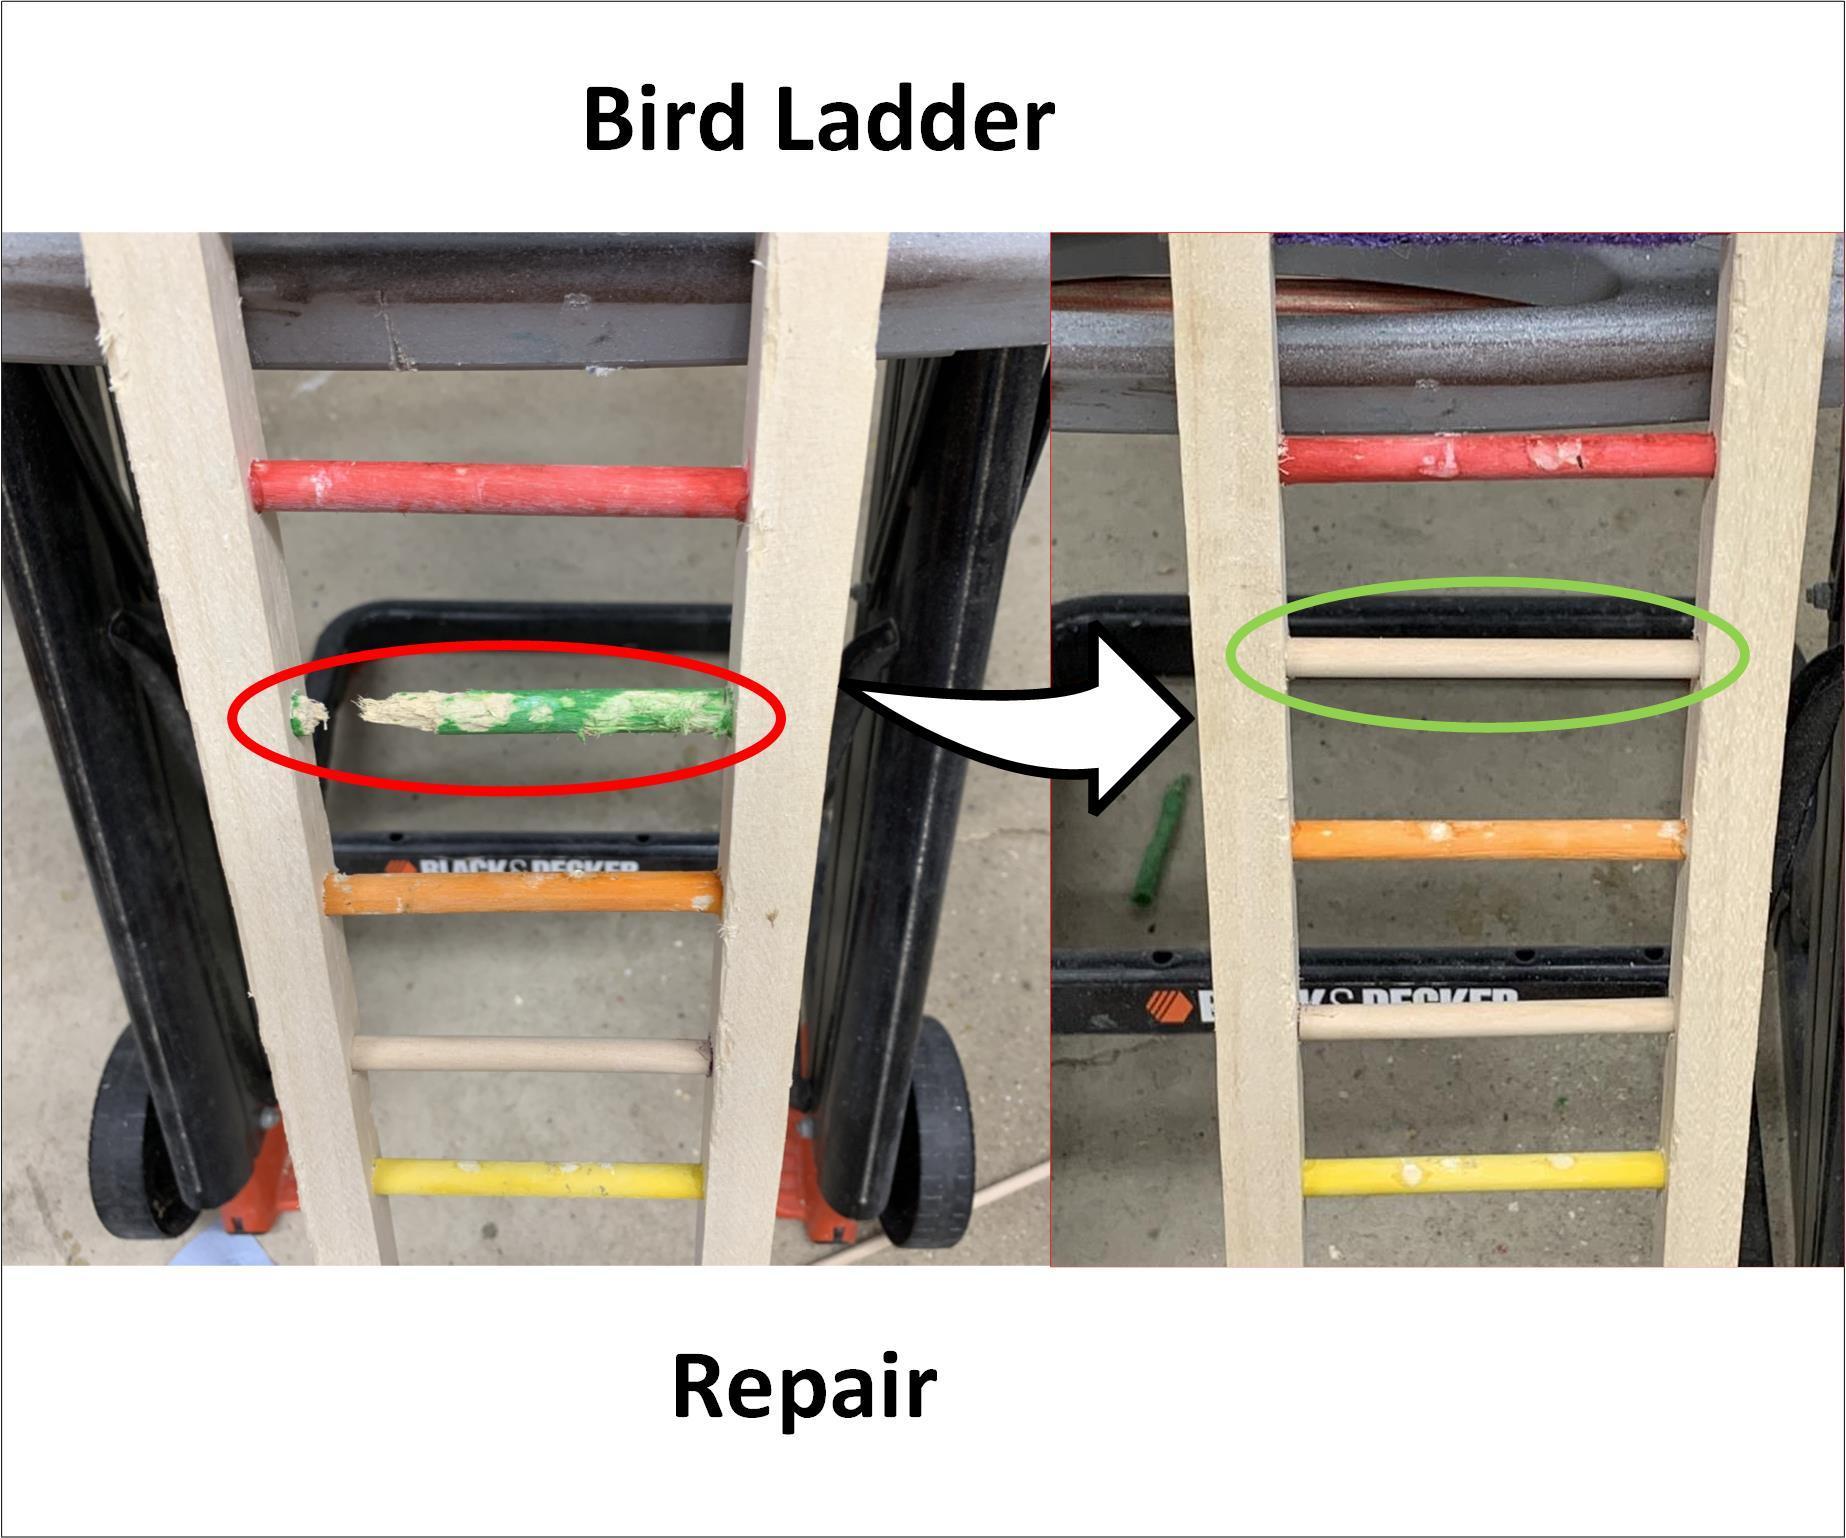 Bird Ladder Repair